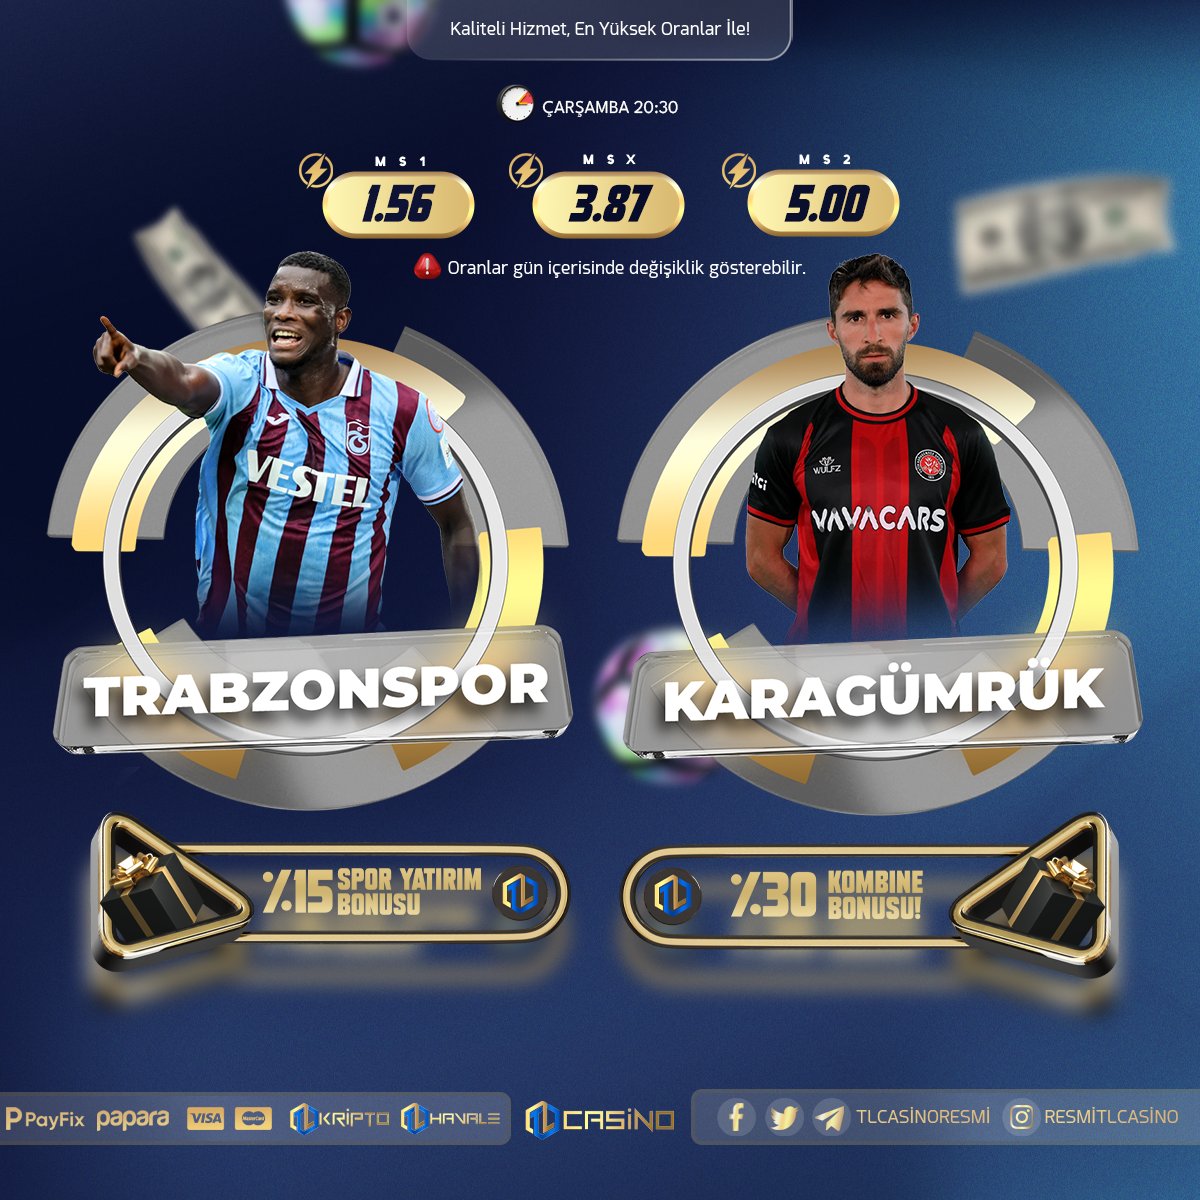 ⚽️ TLCasino İle Günün Şanslı Karşılaşması #trabzonspor #karagümrük 🎁 Spor Yatırımlarınıza %25 Vip Cash-Back 🔗 Güncel Adresimiz: tlcasino287.com